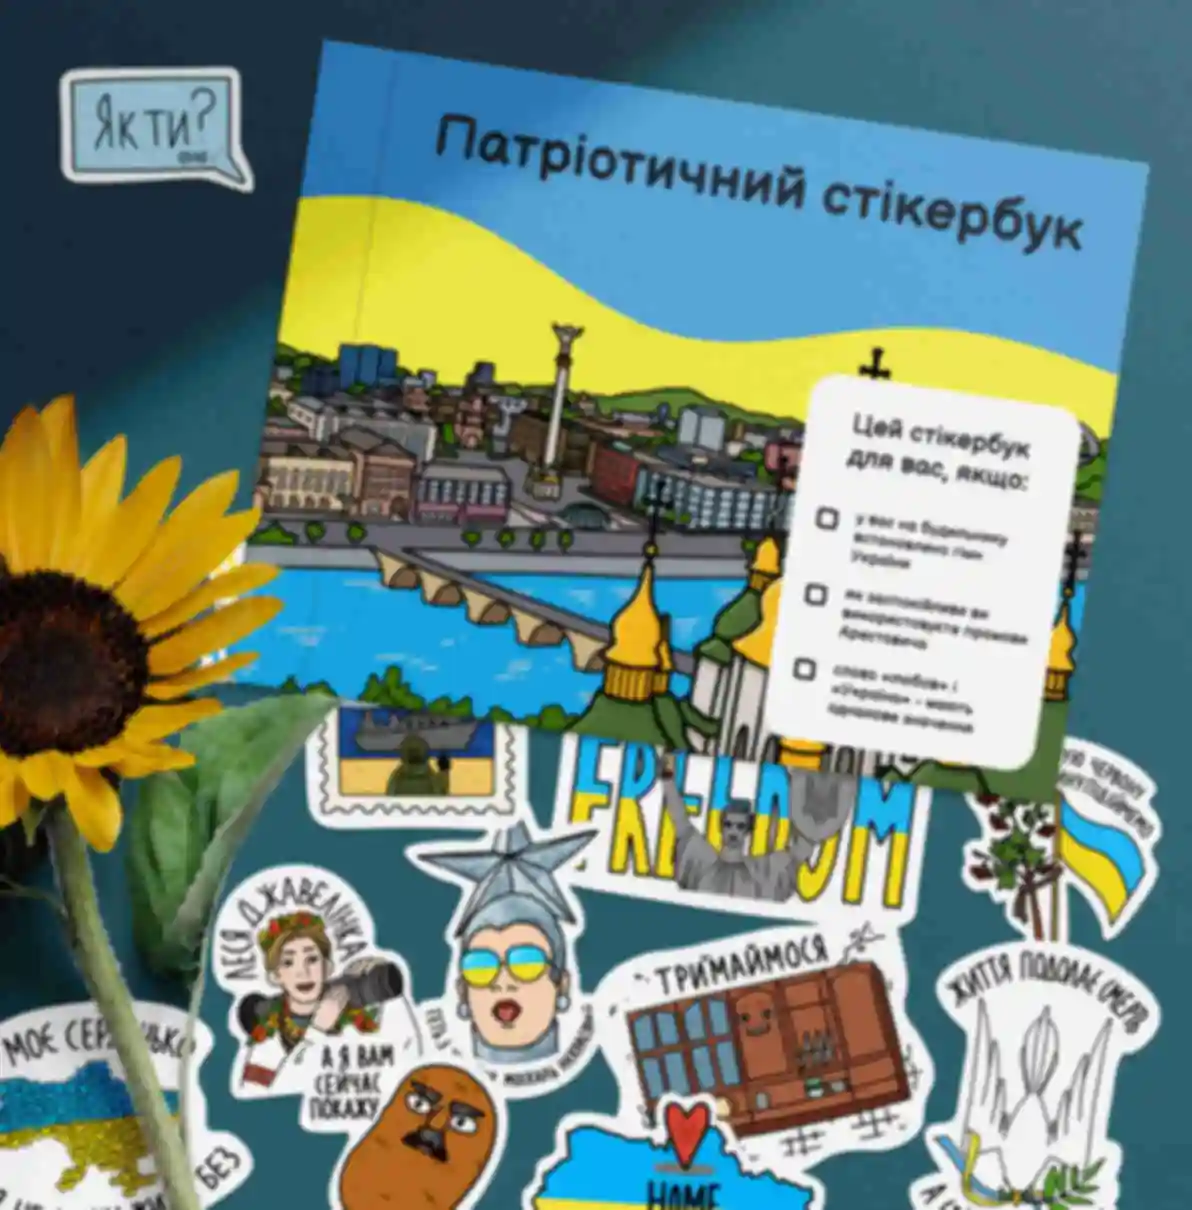 Патриотический стикербук ⦁ Наклейки с украинской символикой и мемами ⦁ Ukraine. Фото №9